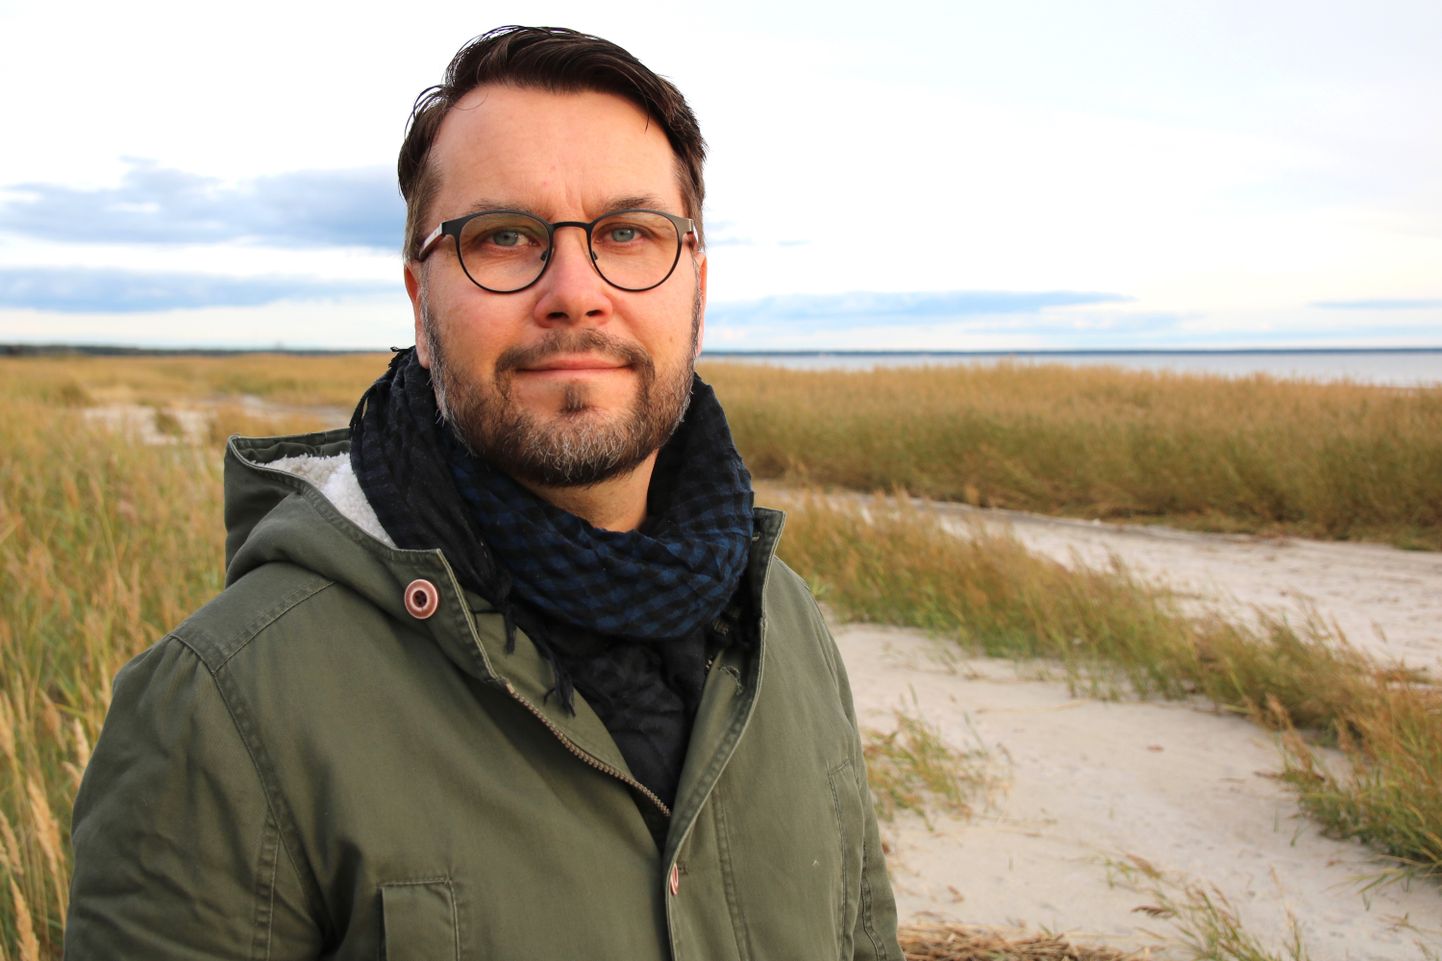 "В книге я попытался показать эстонскую природу с точки зрения финна, что Эстония такая близкая, но все же совсем другая, захватывающая и экзотическая", - говорит независимый журналист и гид по природе Микко Вирта.